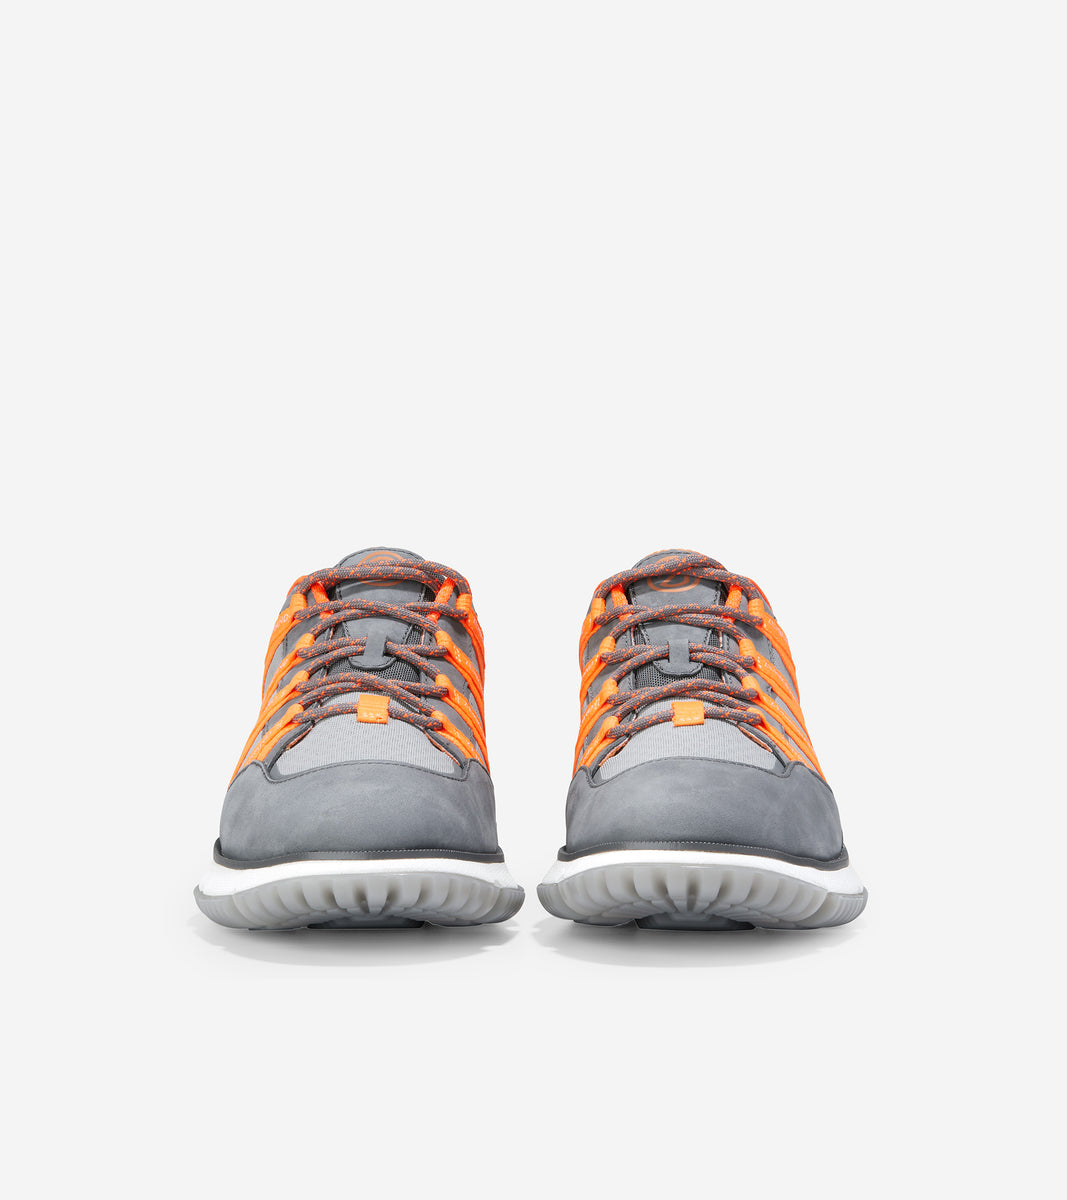 ColeHaan-4.ZERØGRAND Seventy-Five Sneaker-c33840-Quiet Shade-Sleet-Vibrant Orange